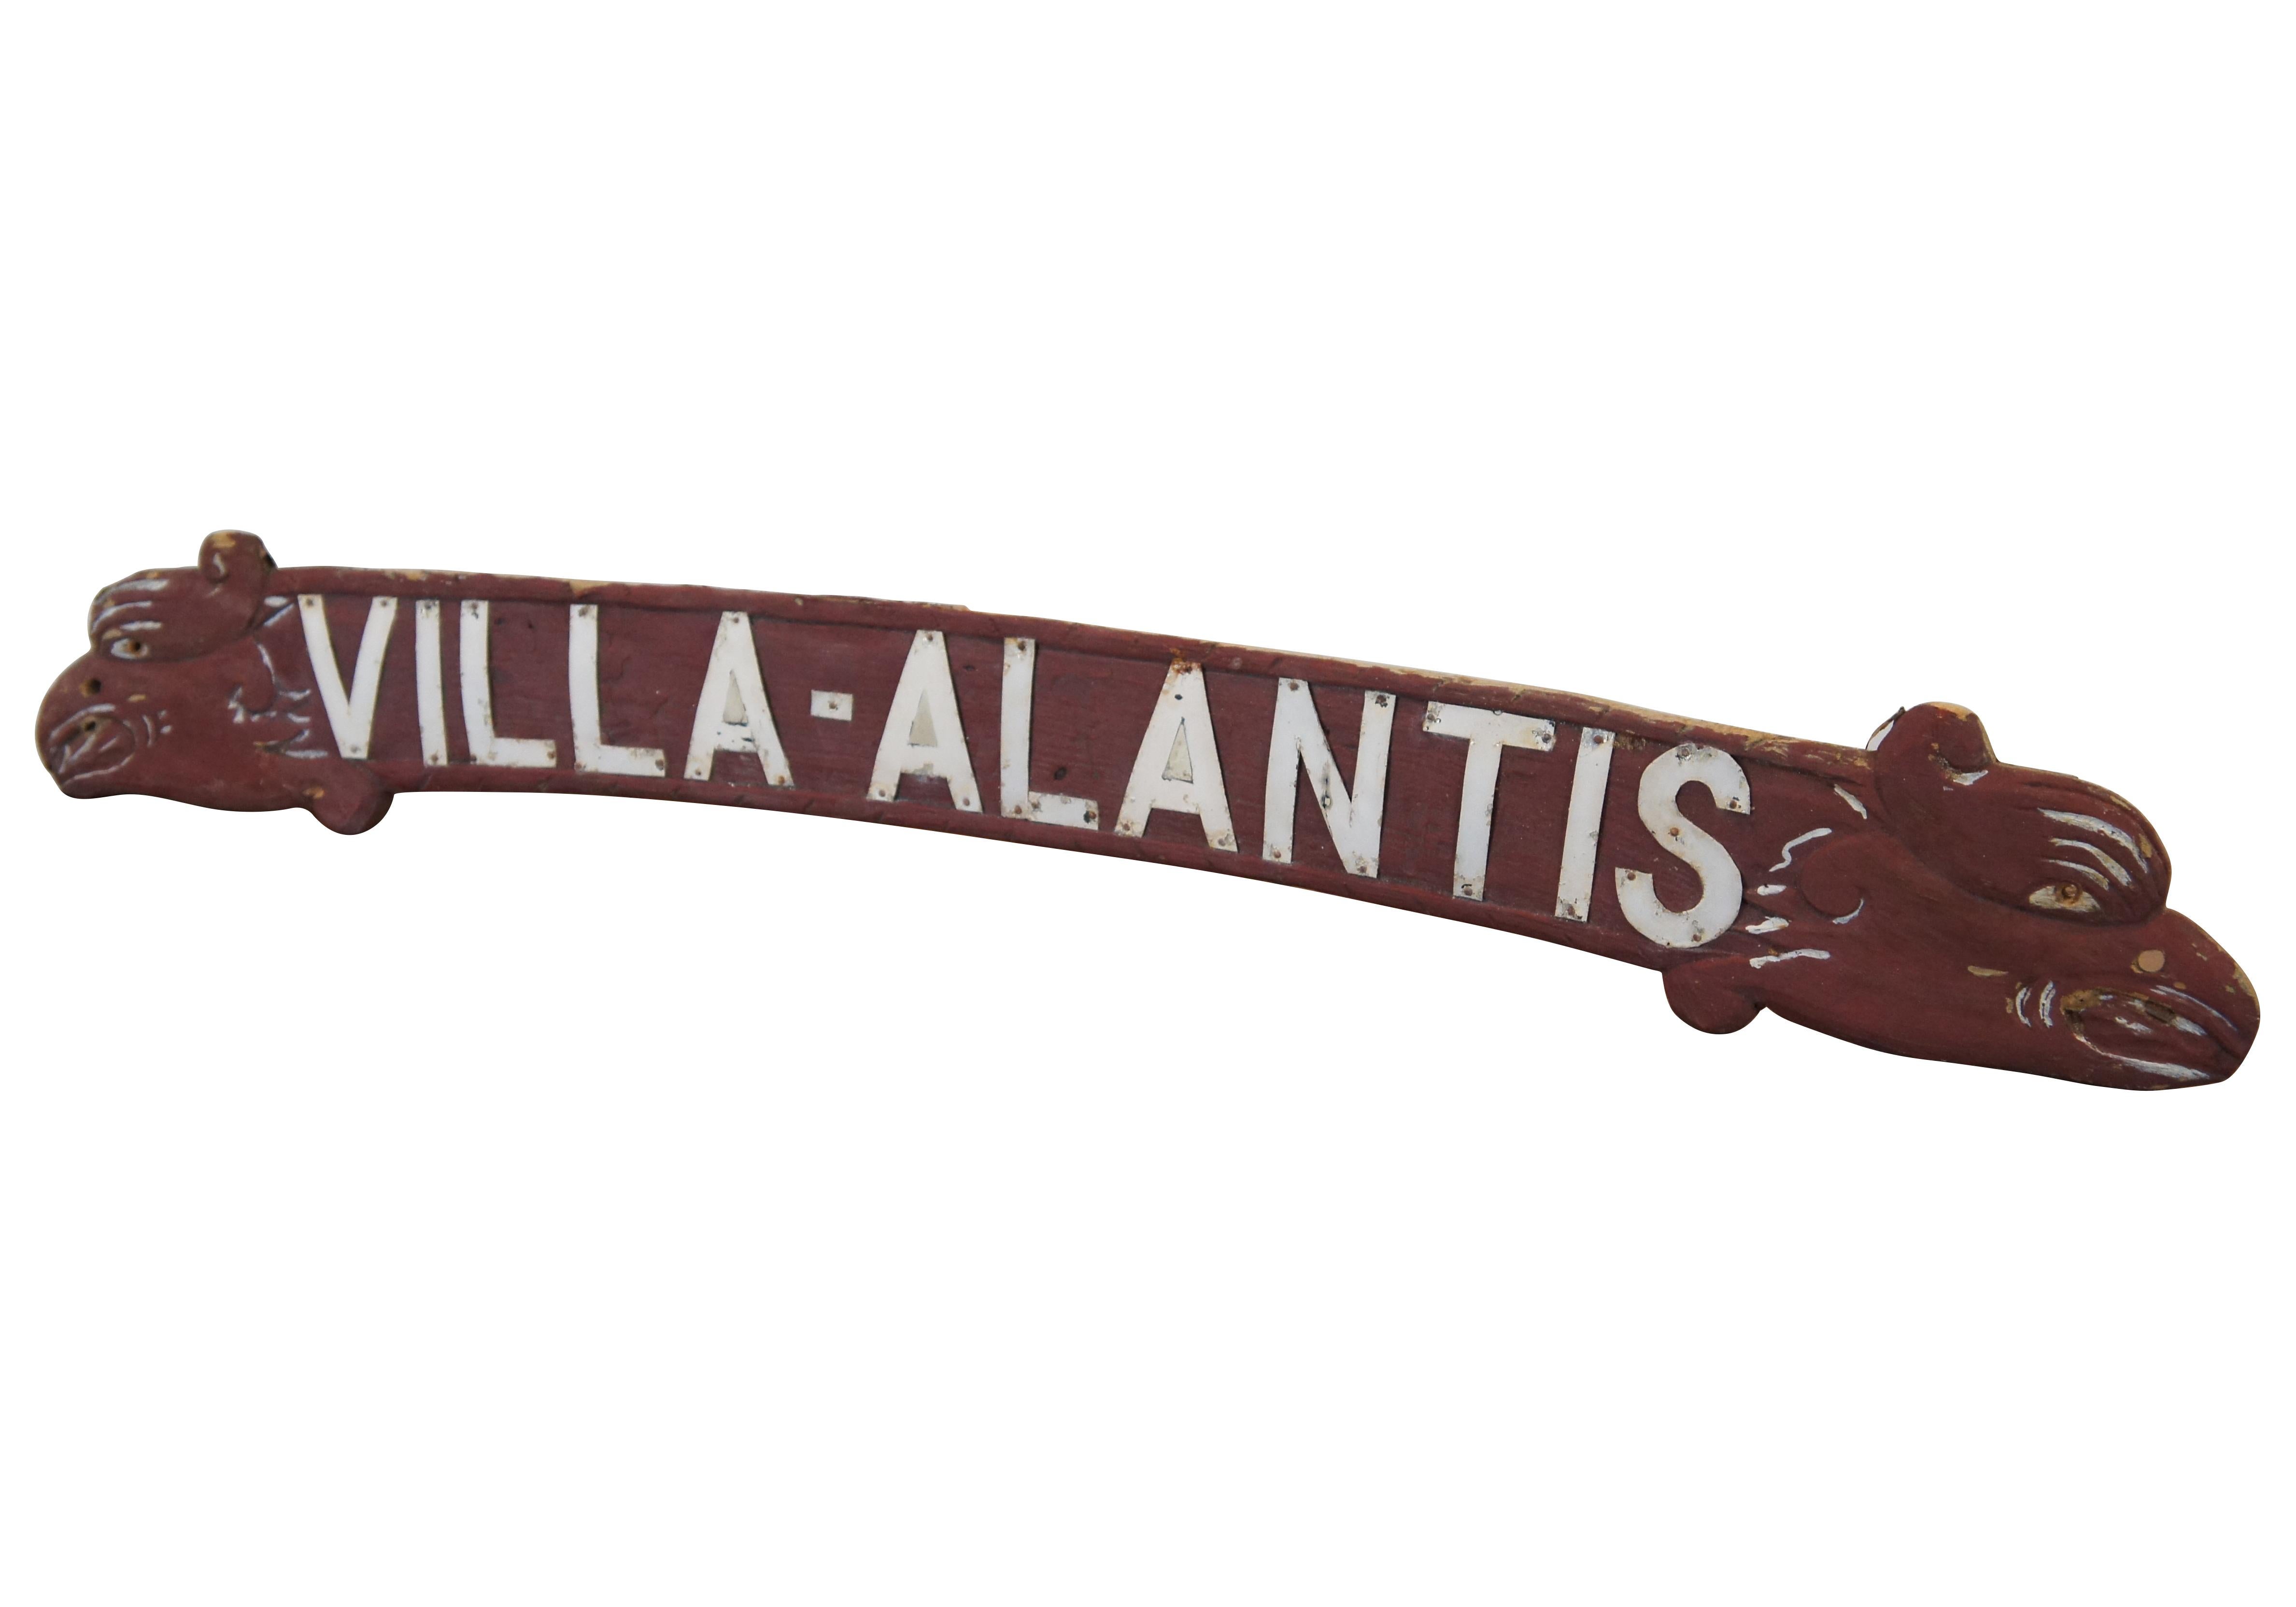 Enseigne publicitaire vintage en bois sculpté avec lettrage en métal blanc pour Villa-Atlantis, présentant une forme légèrement incurvée avec des têtes de dragons, de serpents de mer ou d'aigles / gryphons.